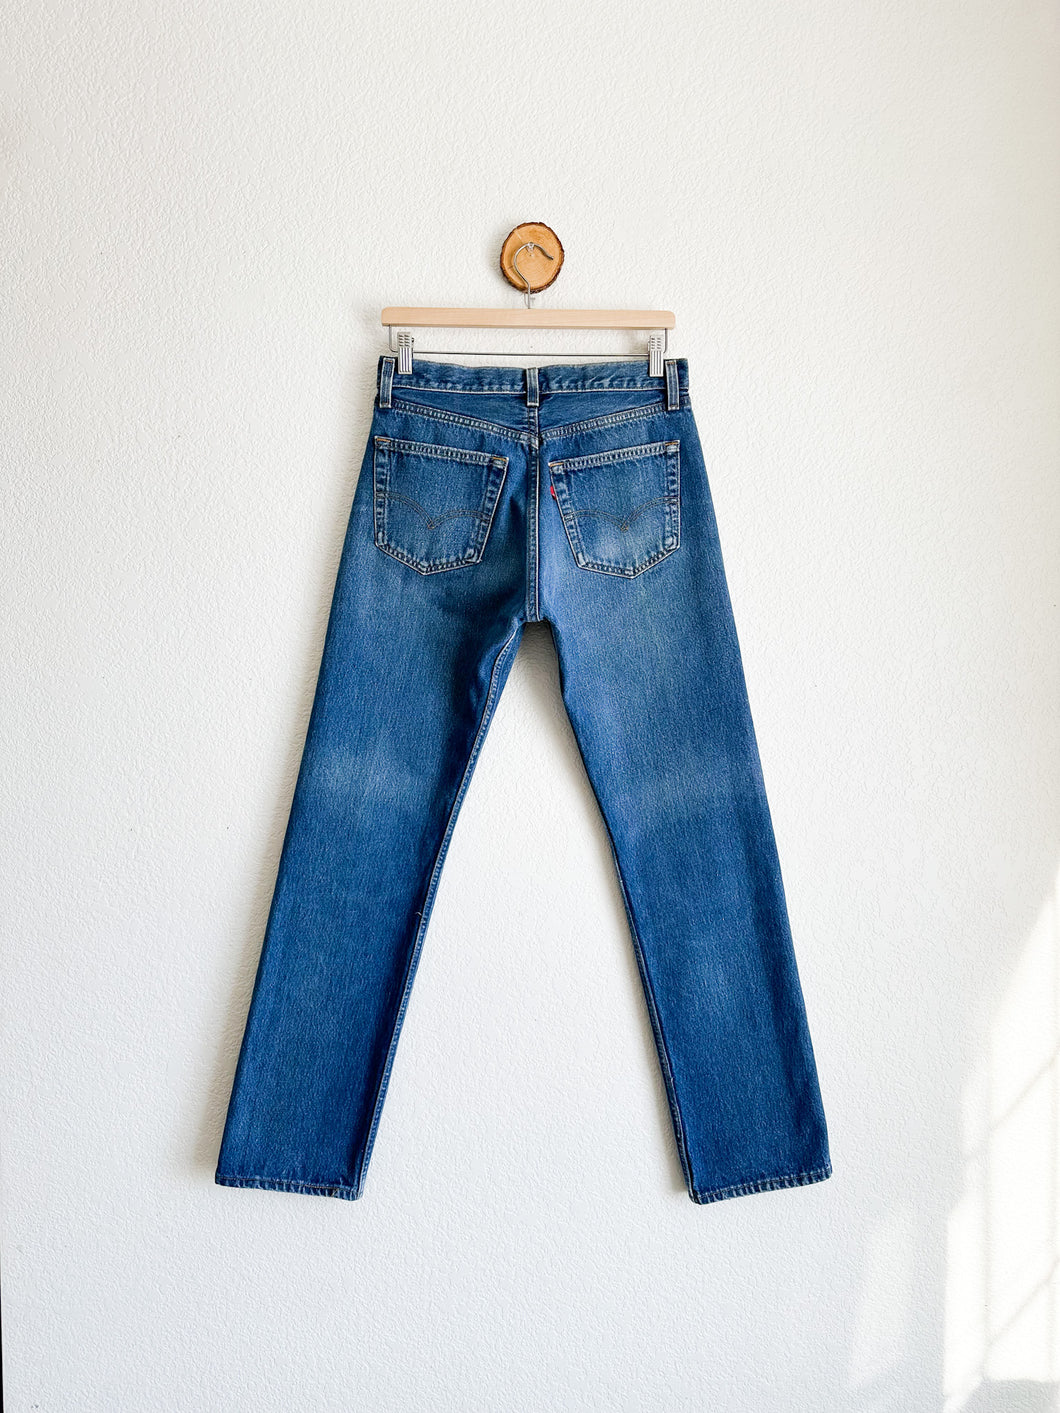 Vintage Levi's 501 Jeans - 29.5